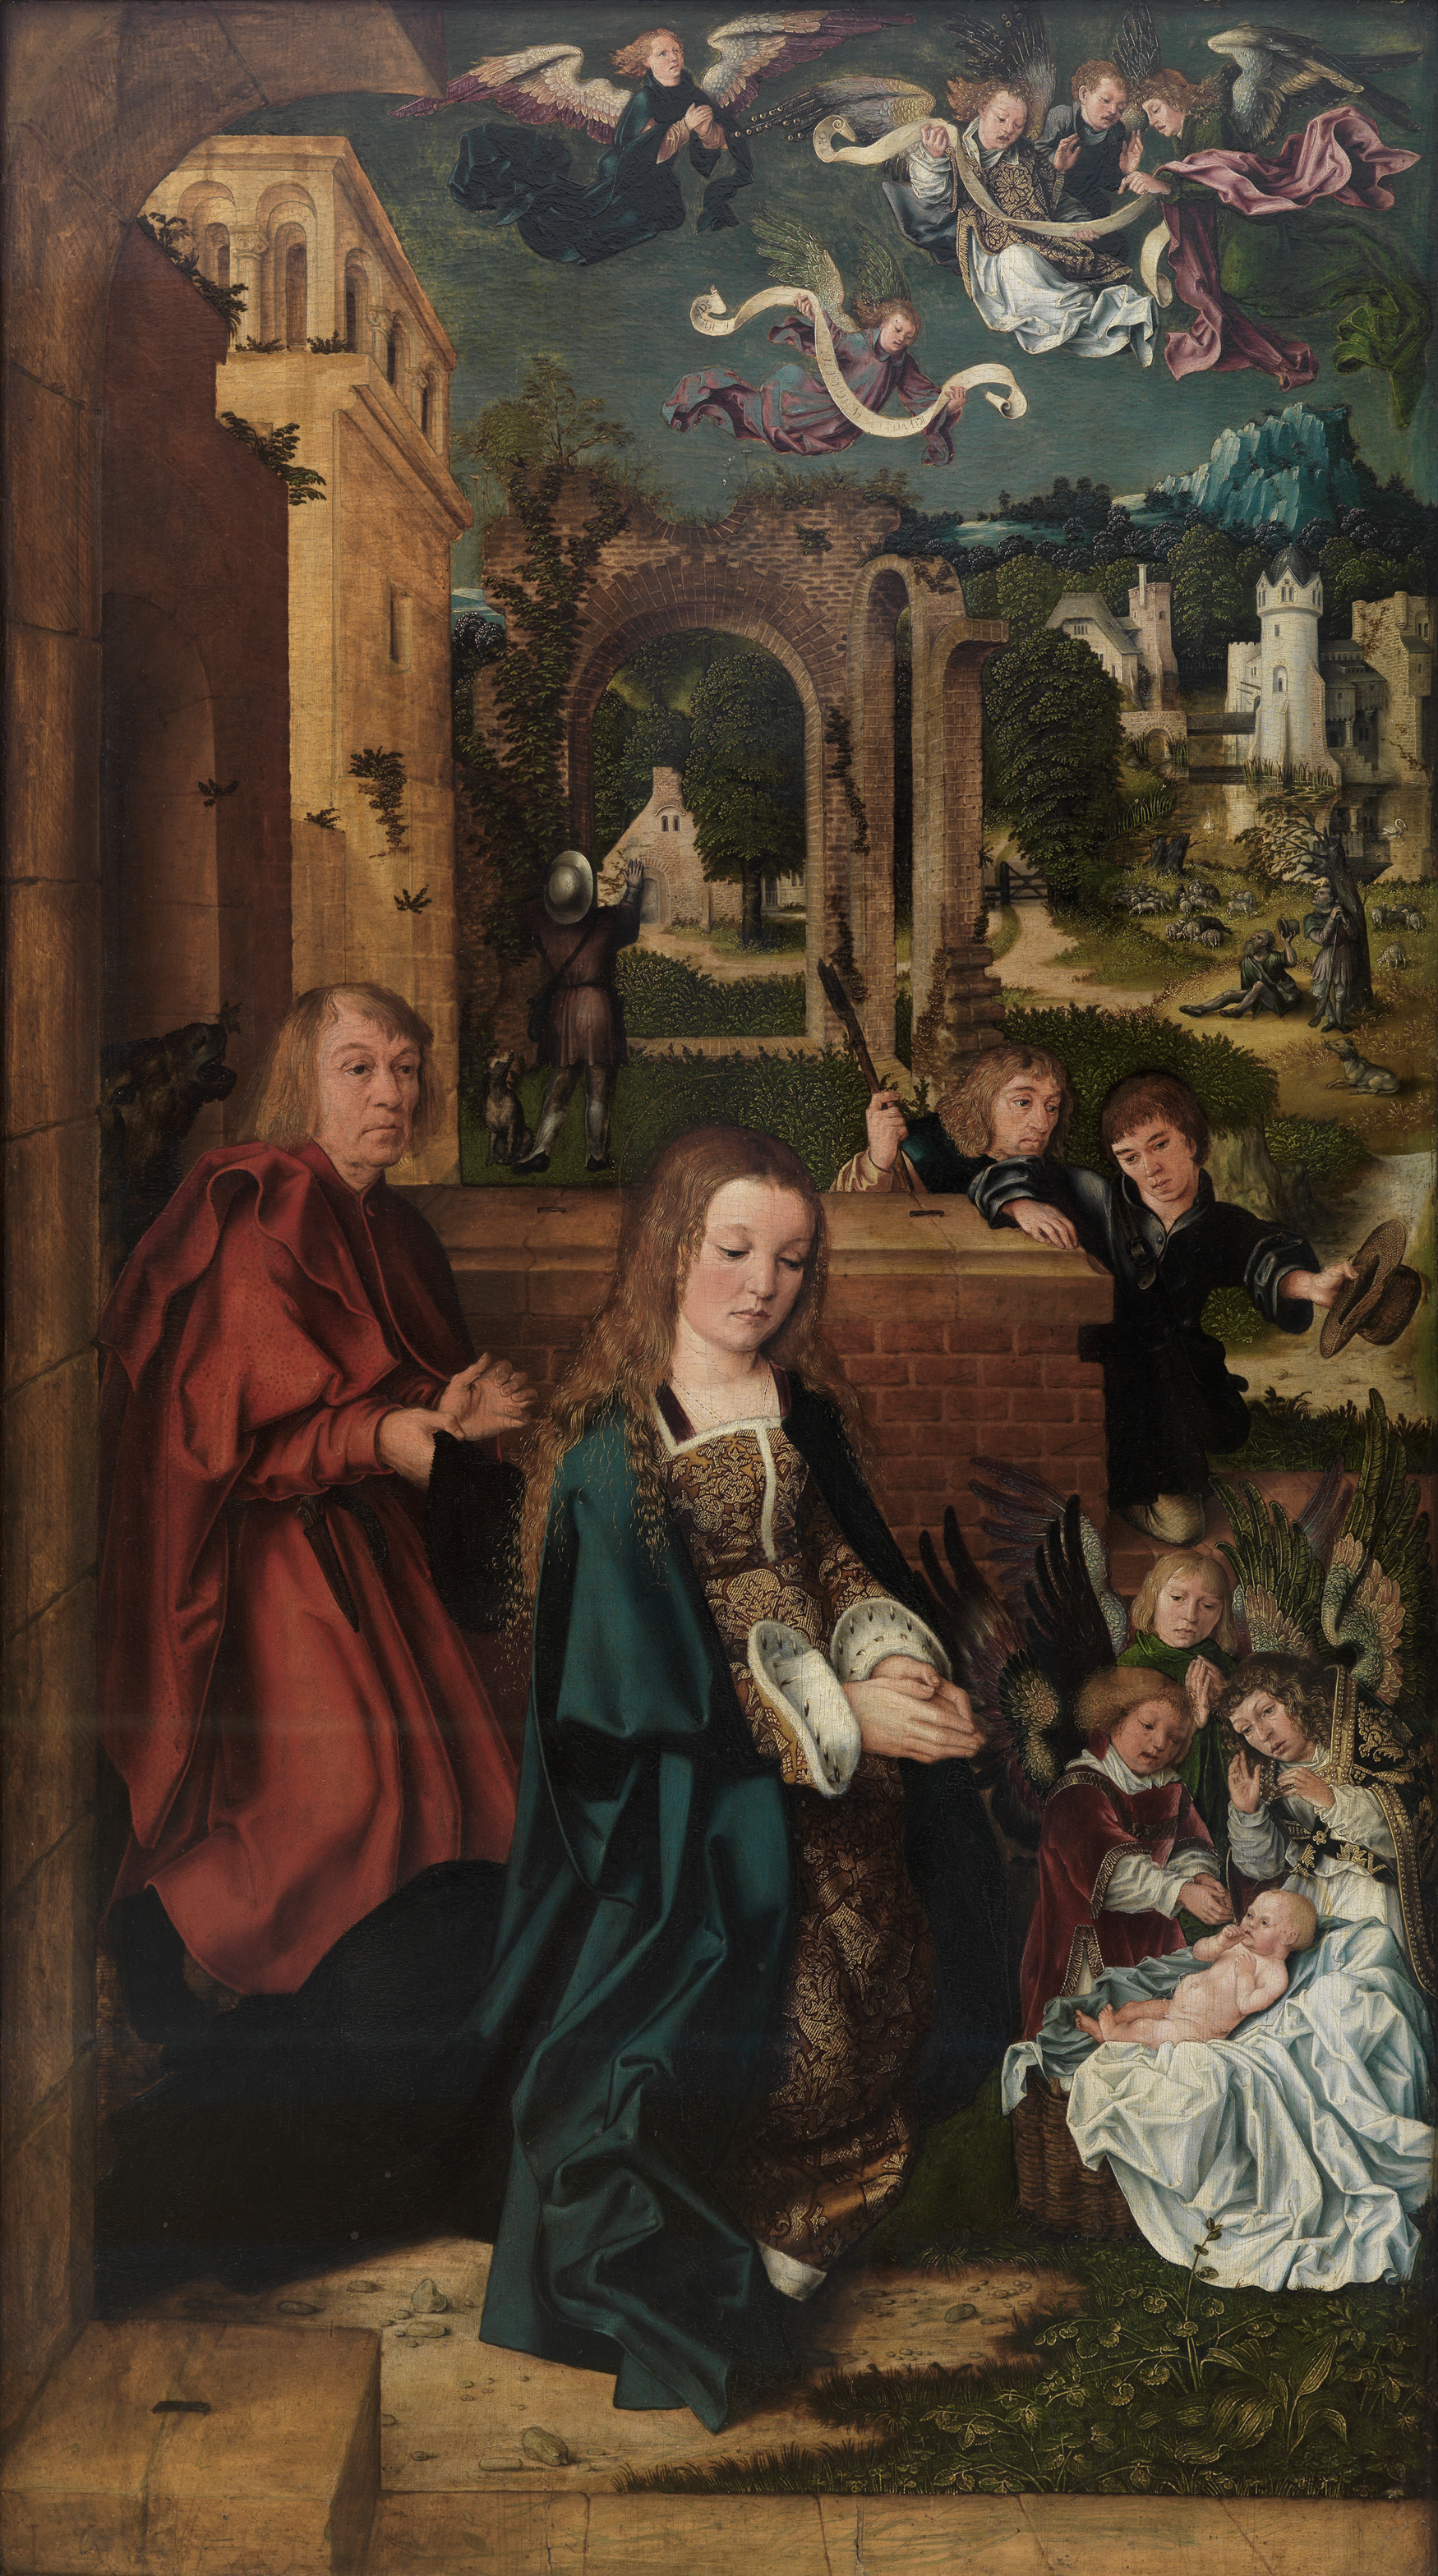 Das Gemälde zeigt die Anbetung des Kindes mit Maria, Jesus, Engeln und weiteren Figuren